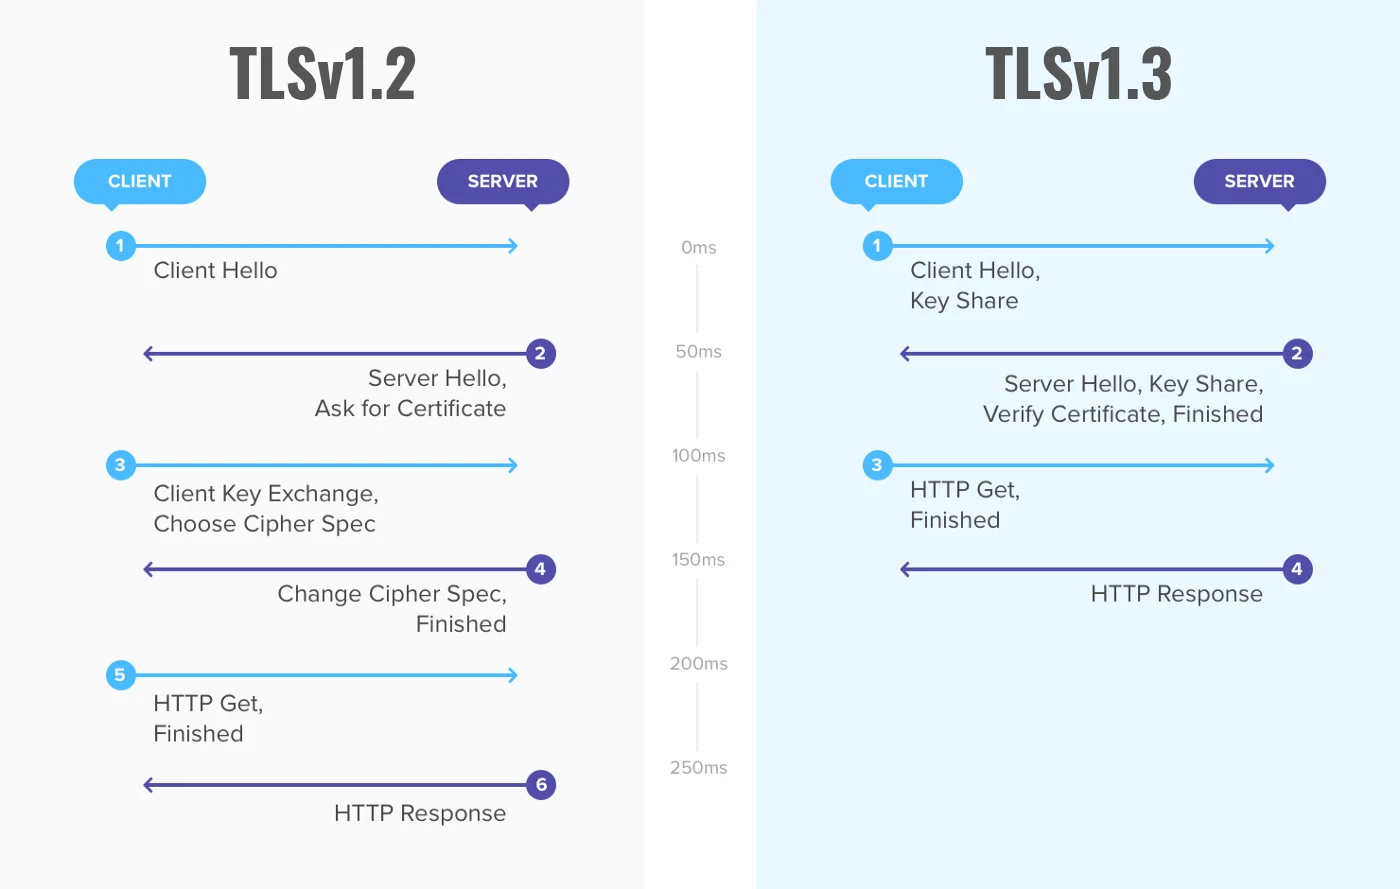 As diferenças entre TLSv1.2 e TLSv1.3